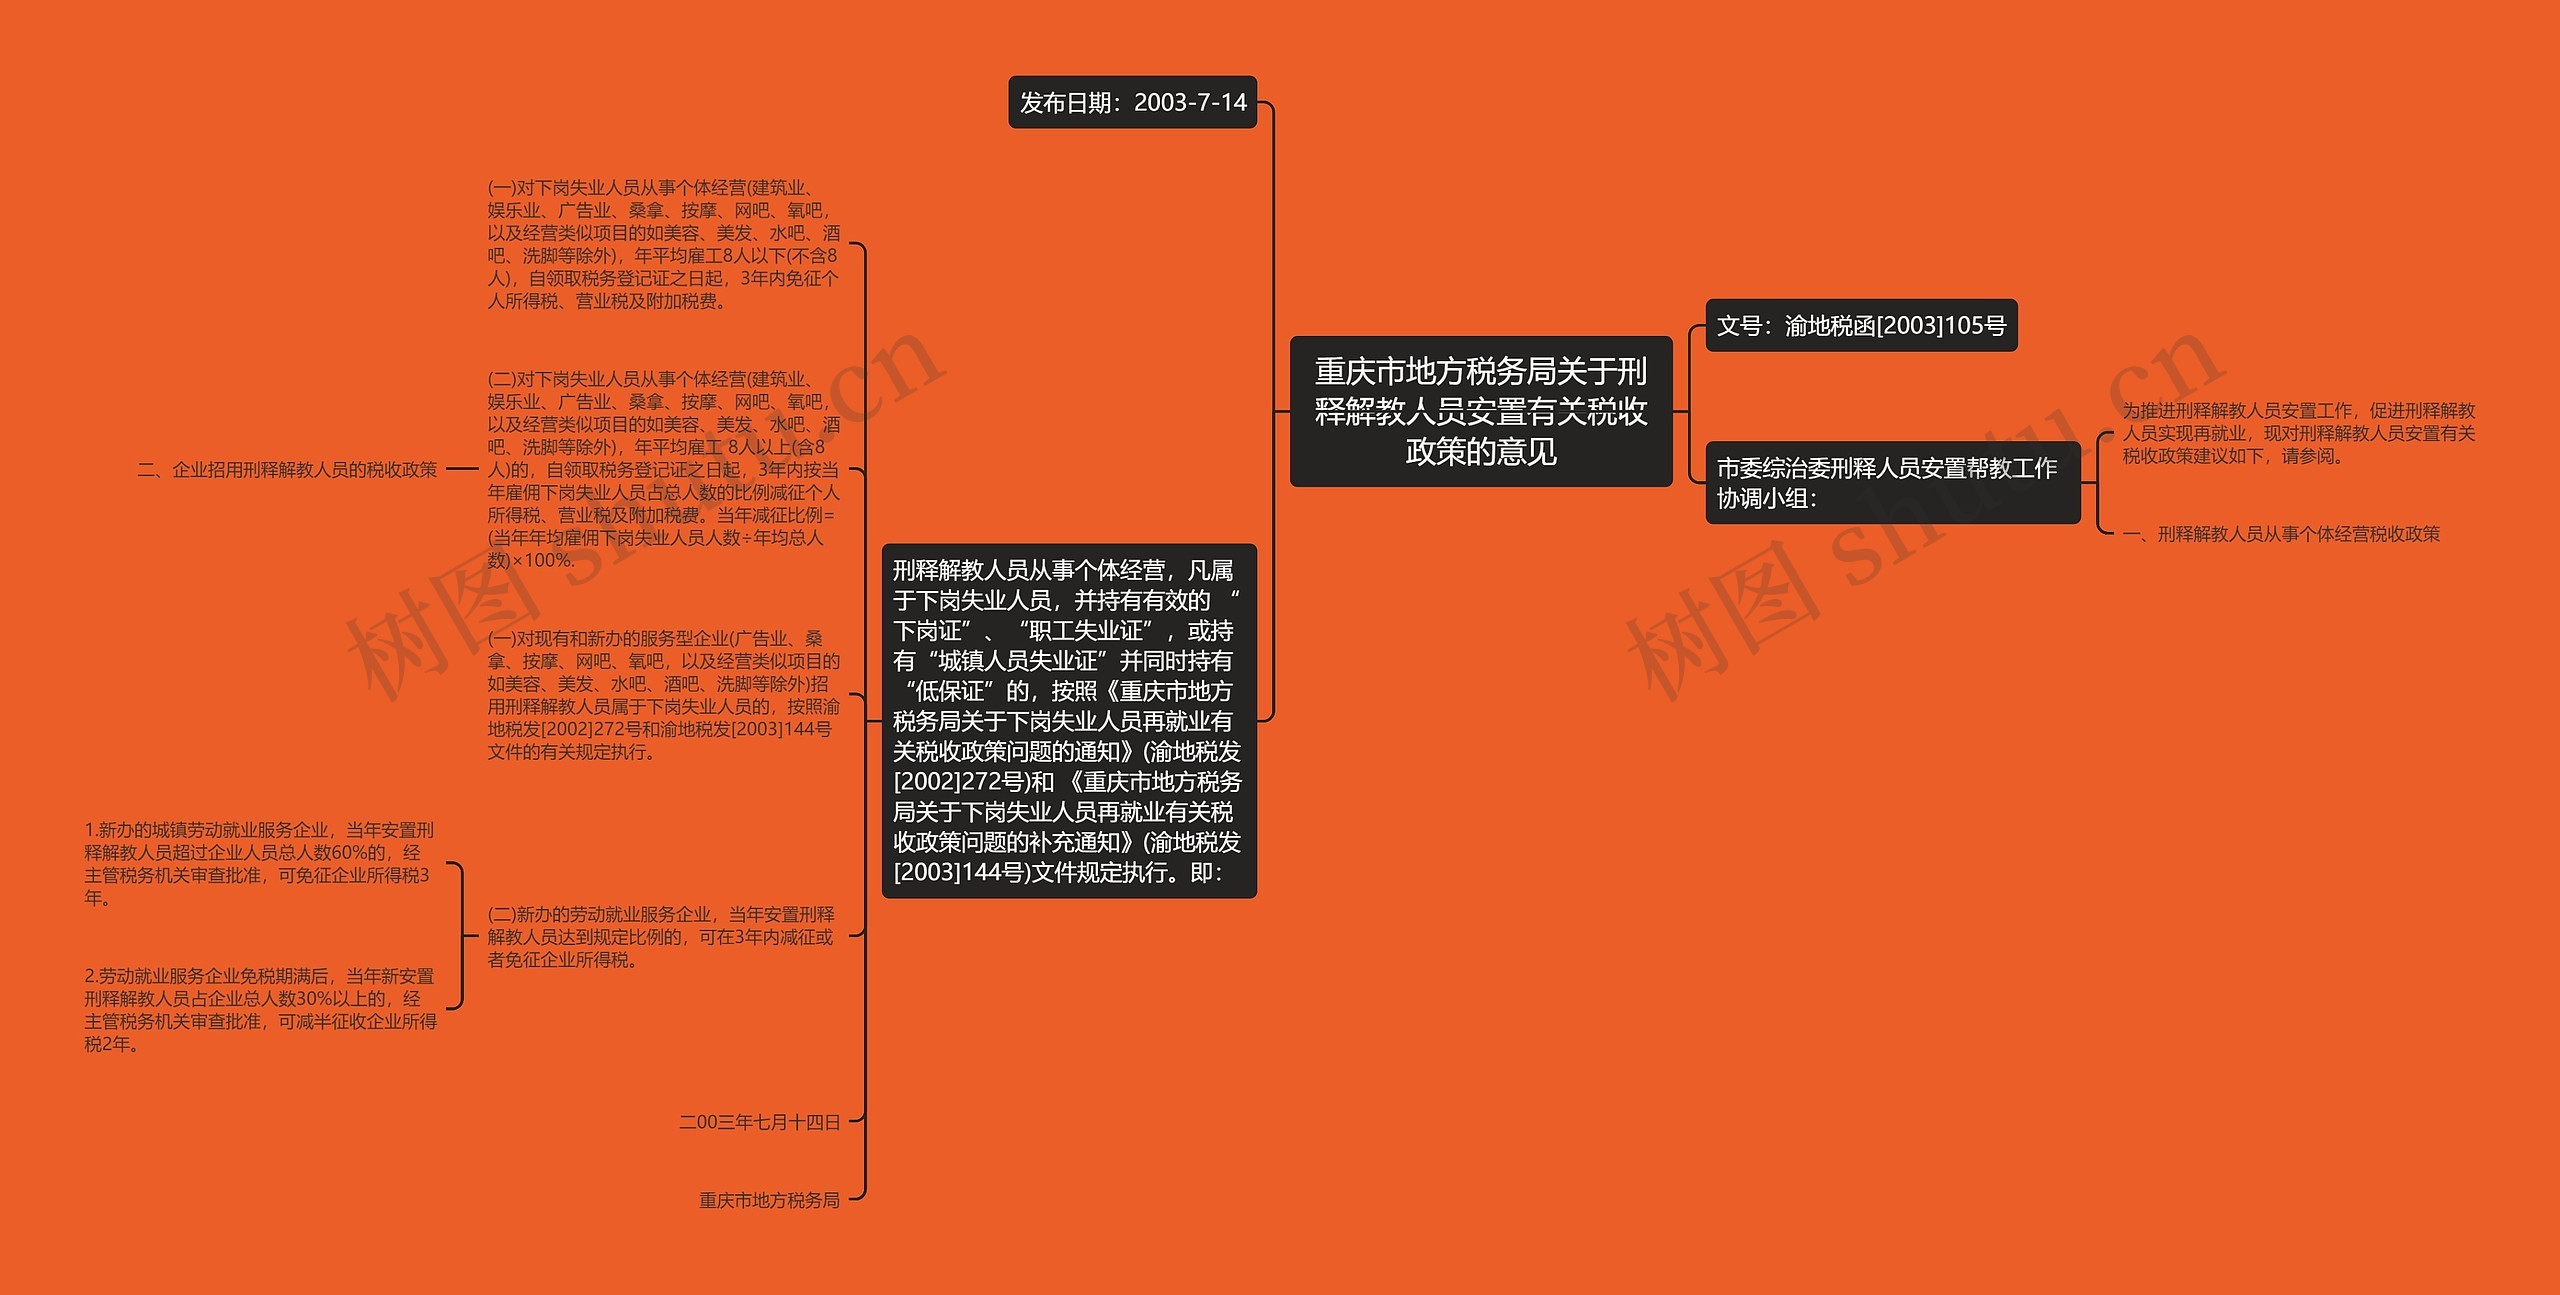 重庆市地方税务局关于刑释解教人员安置有关税收政策的意见